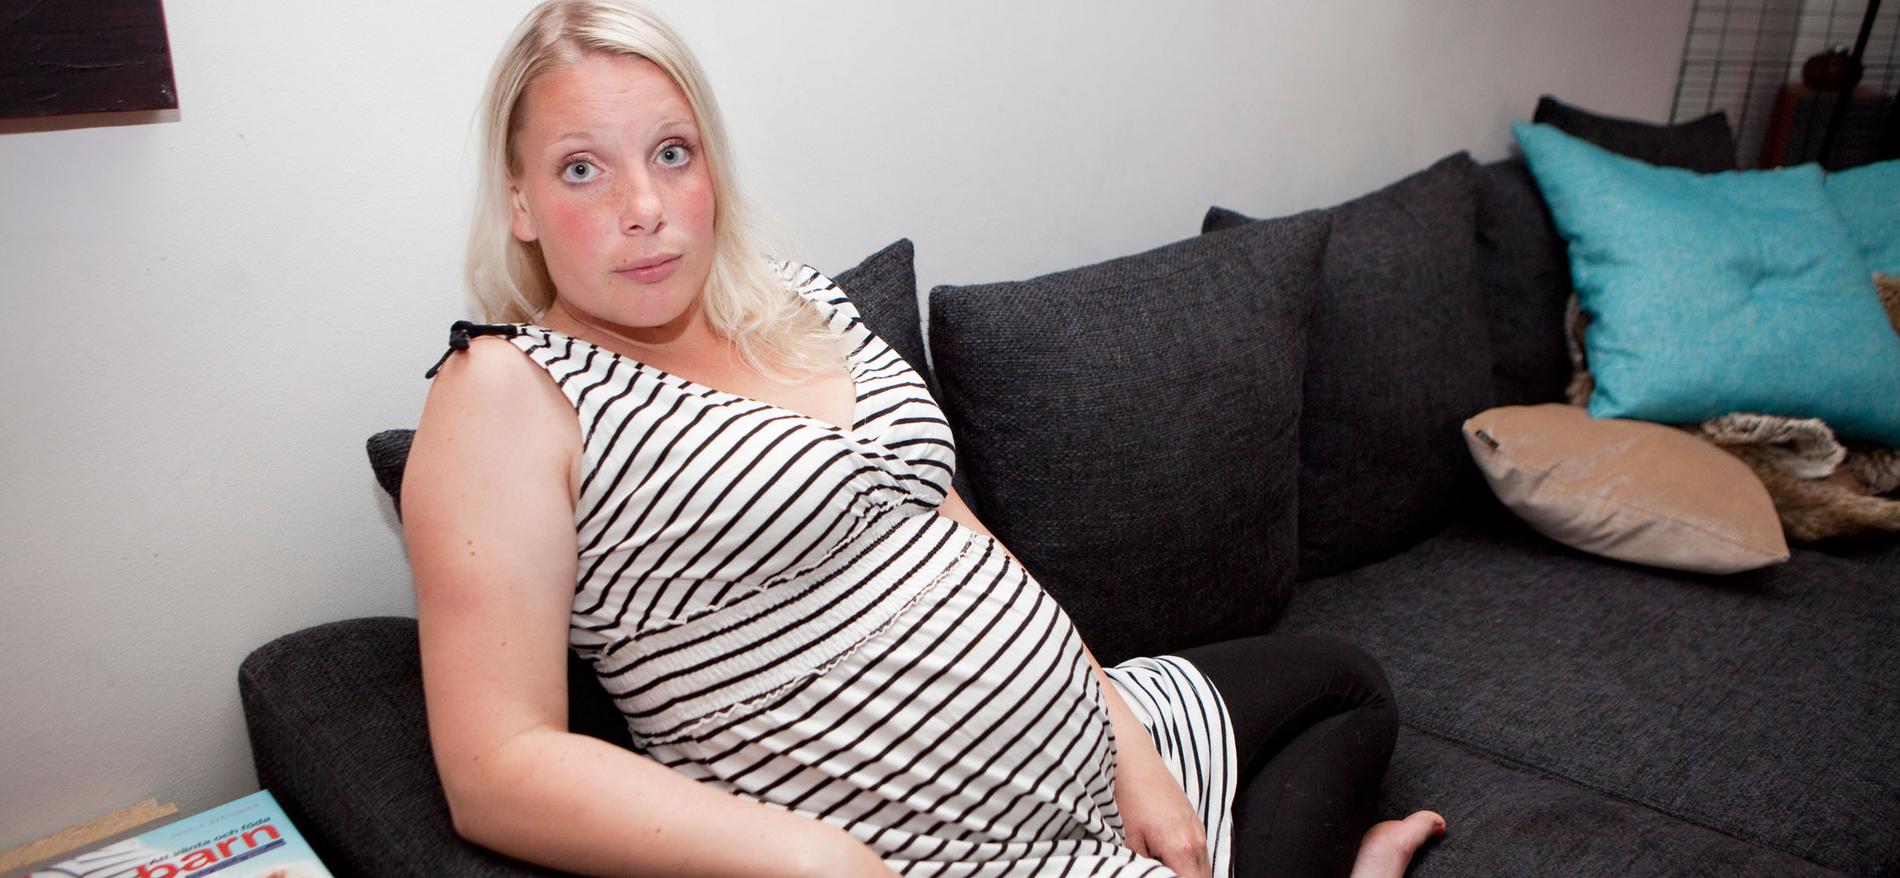 UPPSAGD. Charlotte Sundström, 24, berättade för sin arbetsgivare att hon var gravid och inte skulle orka jobba övertid. Då fick hon sparken.